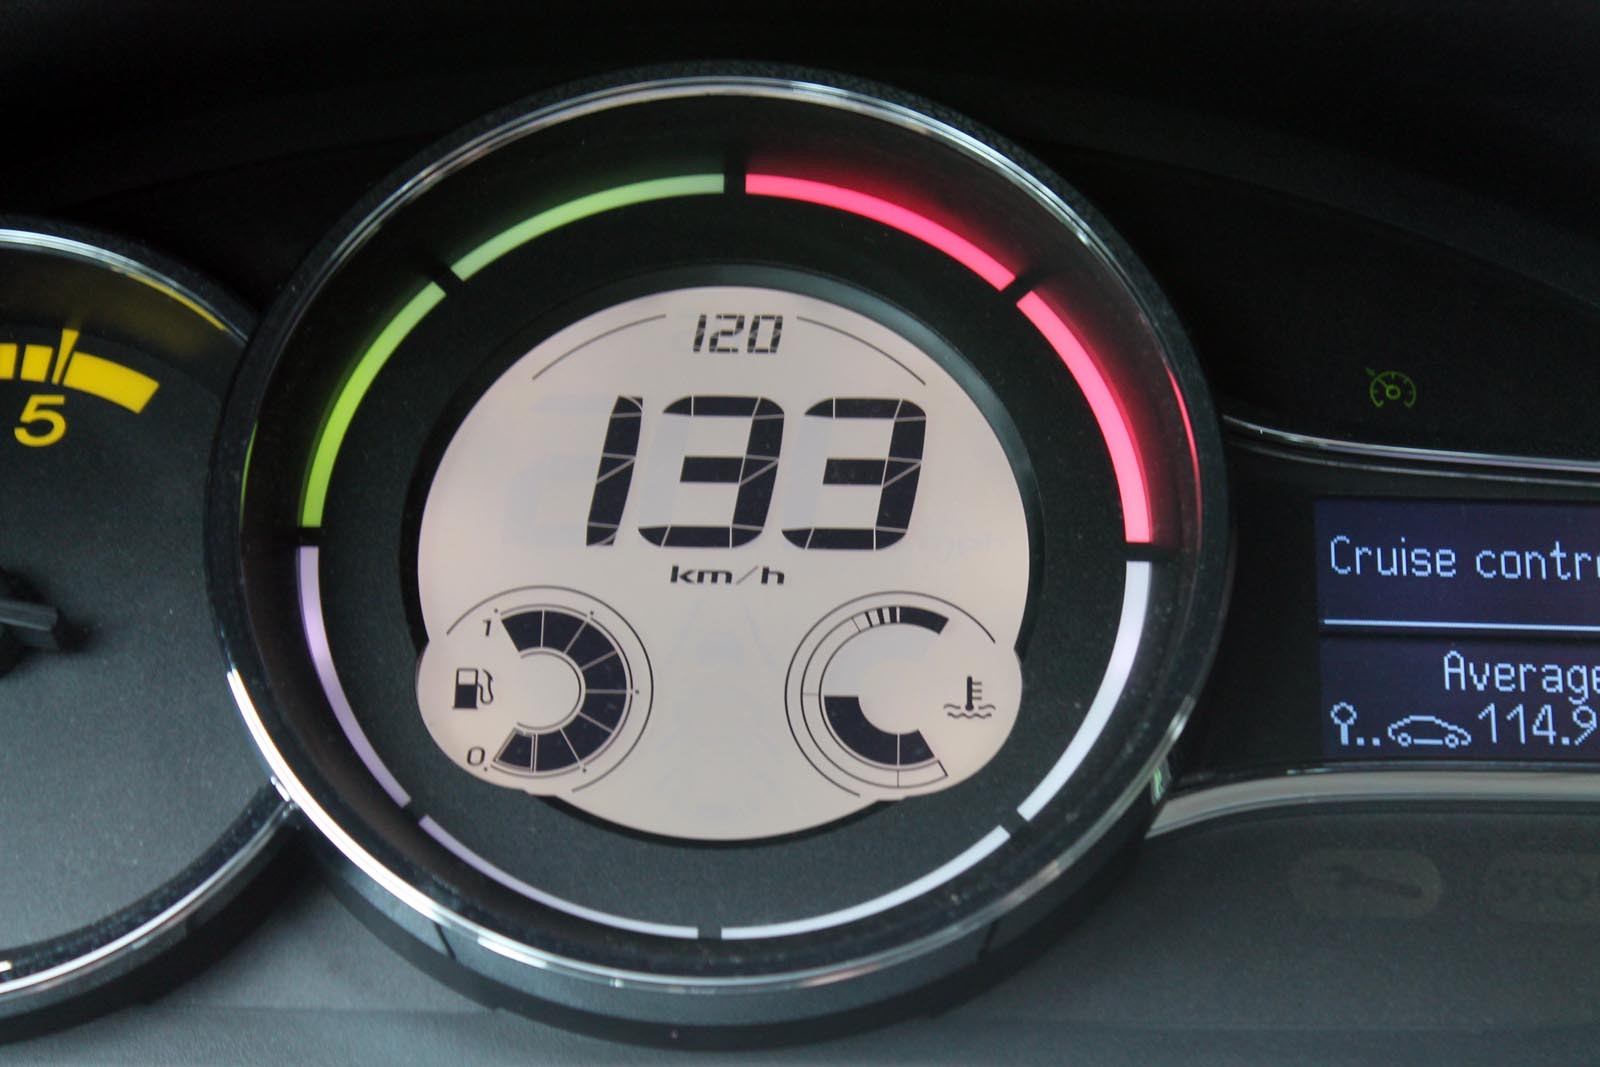 Foarte buna ideea displayului cu indicarea vitezei setate si ledurile verzi si rosii